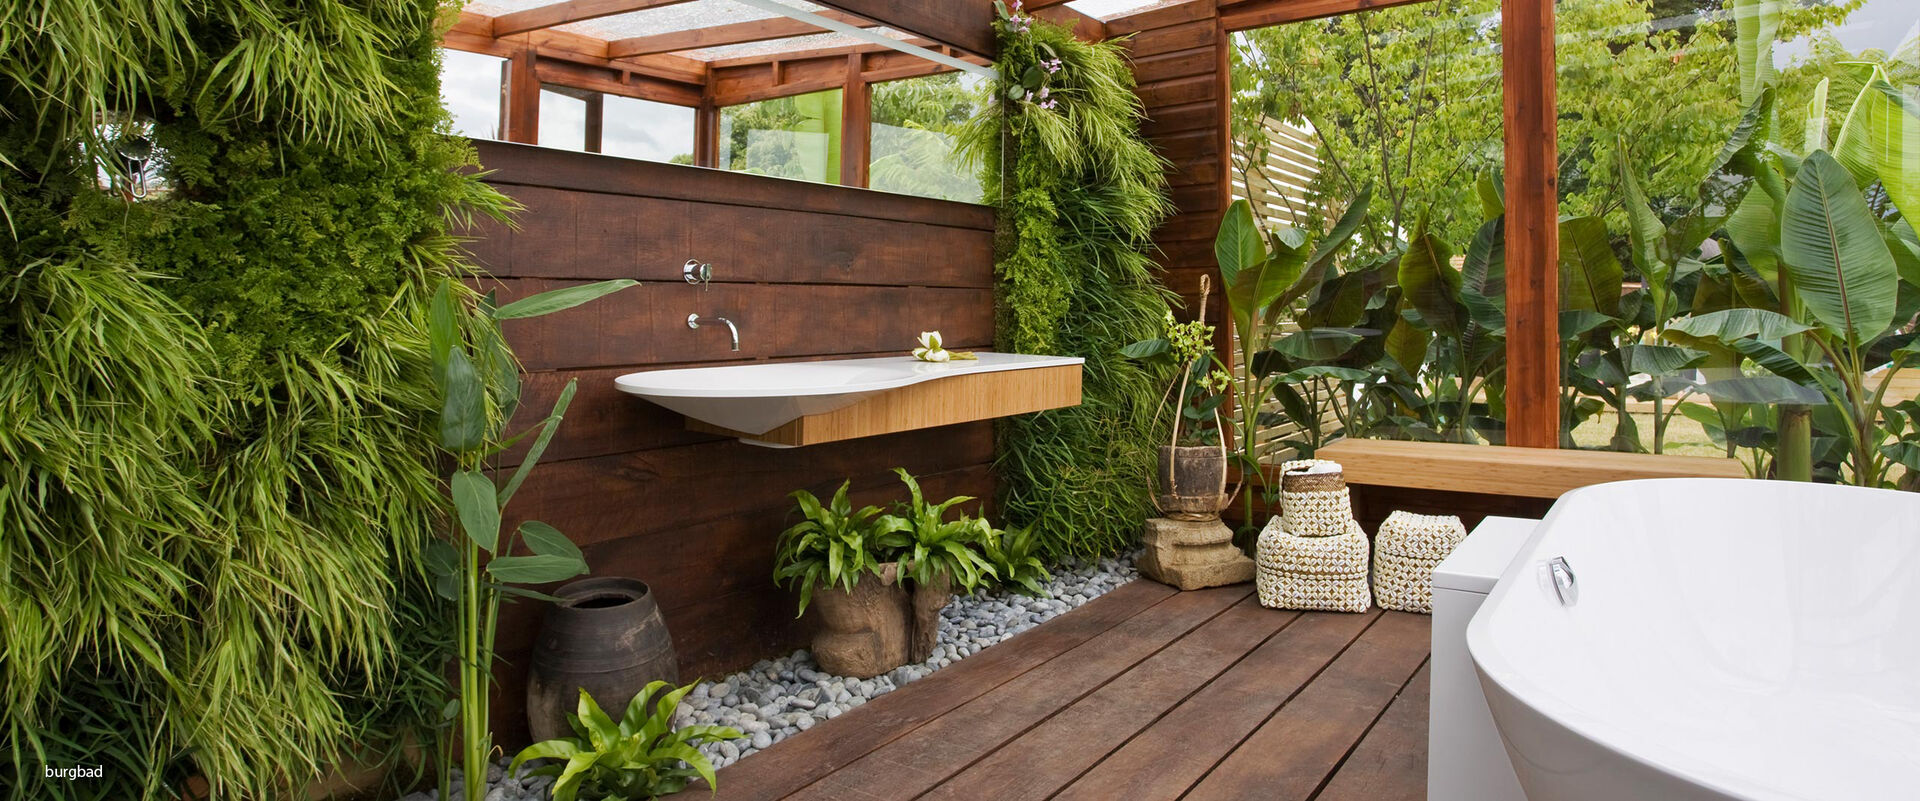 Burgbad inszeniert seine Badezimmerobjekte im Urban Jungle Style im grünen Bad.